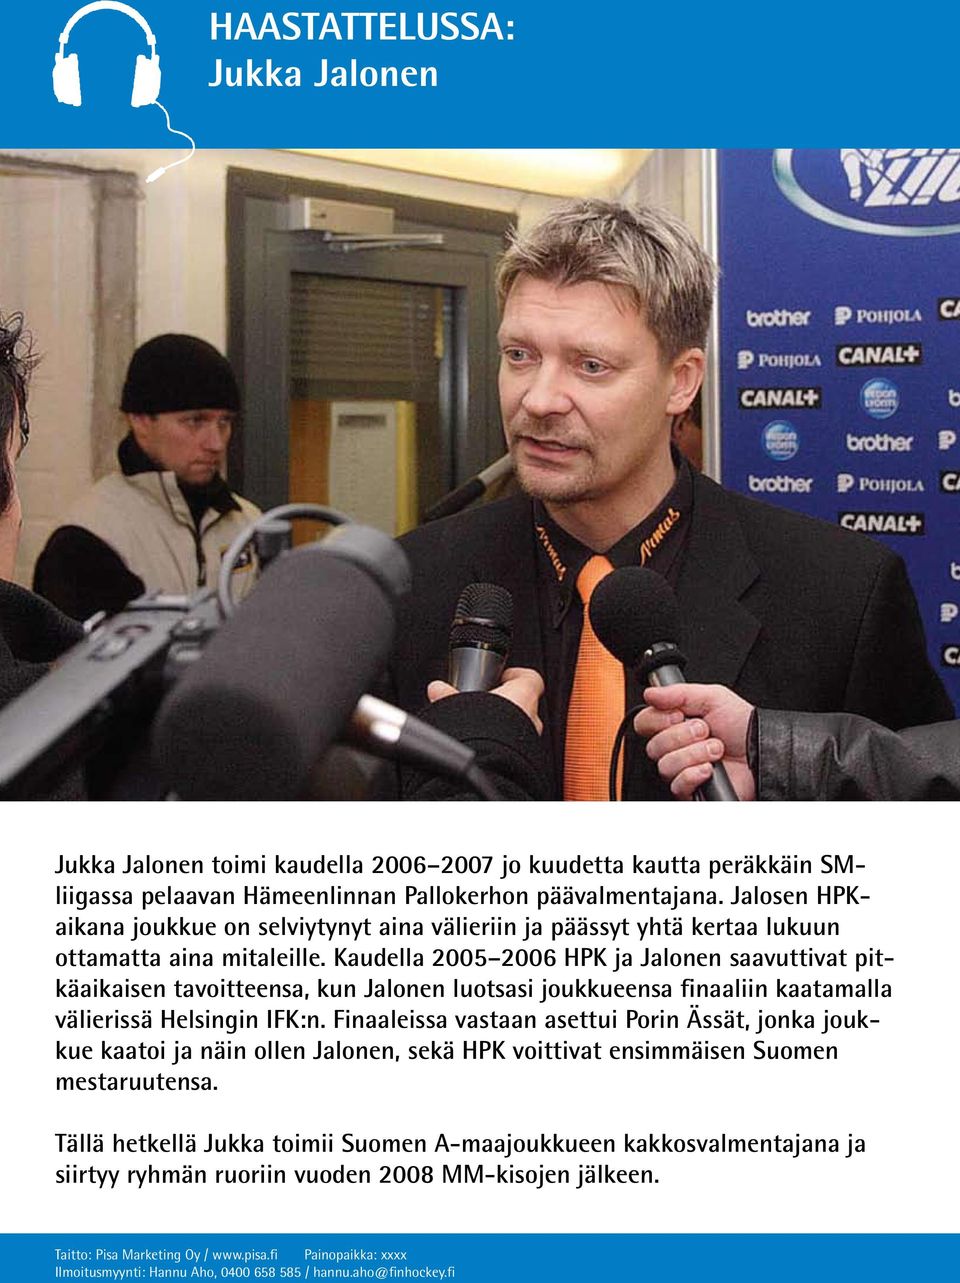 Kaudella 2005 2006 HPK ja Jalonen saavuttivat pitkäaikaisen tavoitteensa, kun Jalonen luotsasi joukkueensa finaaliin kaatamalla välierissä Helsingin IFK:n.